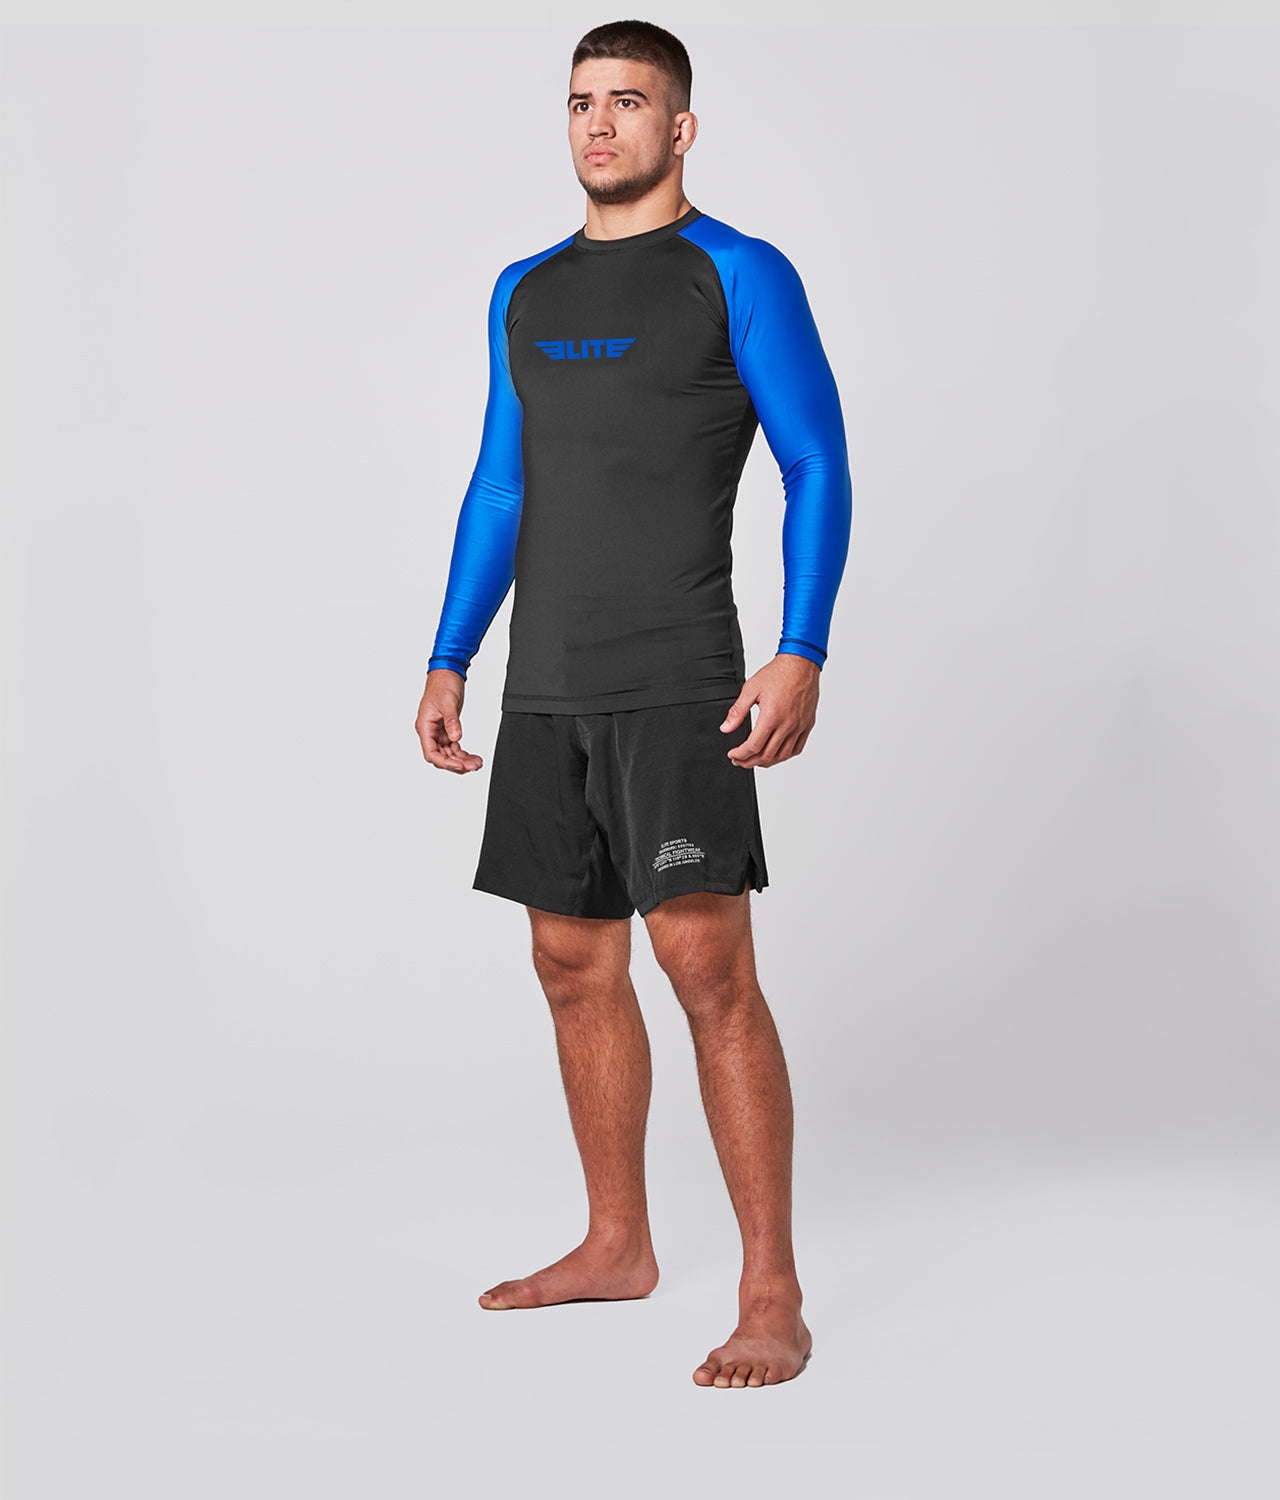 Elite Sports Men's Standard Blue Long Sleeve MMA Rash Guard Side View